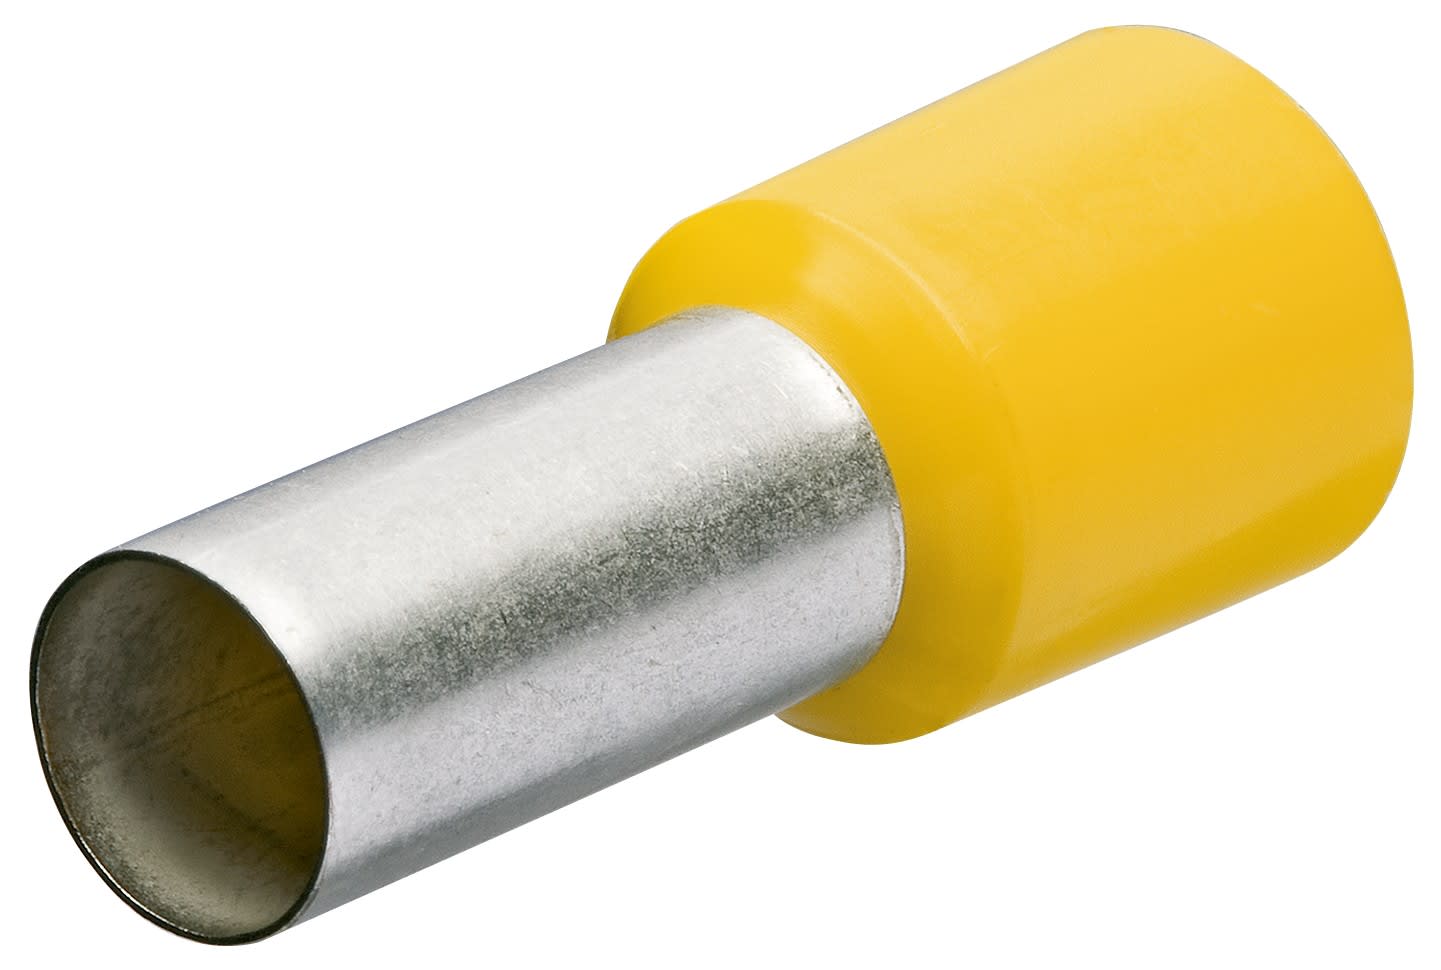 KNIPEX - Embouts de cables isoles jaune 25,0mm2 - longueur 30mm - 50 pieces